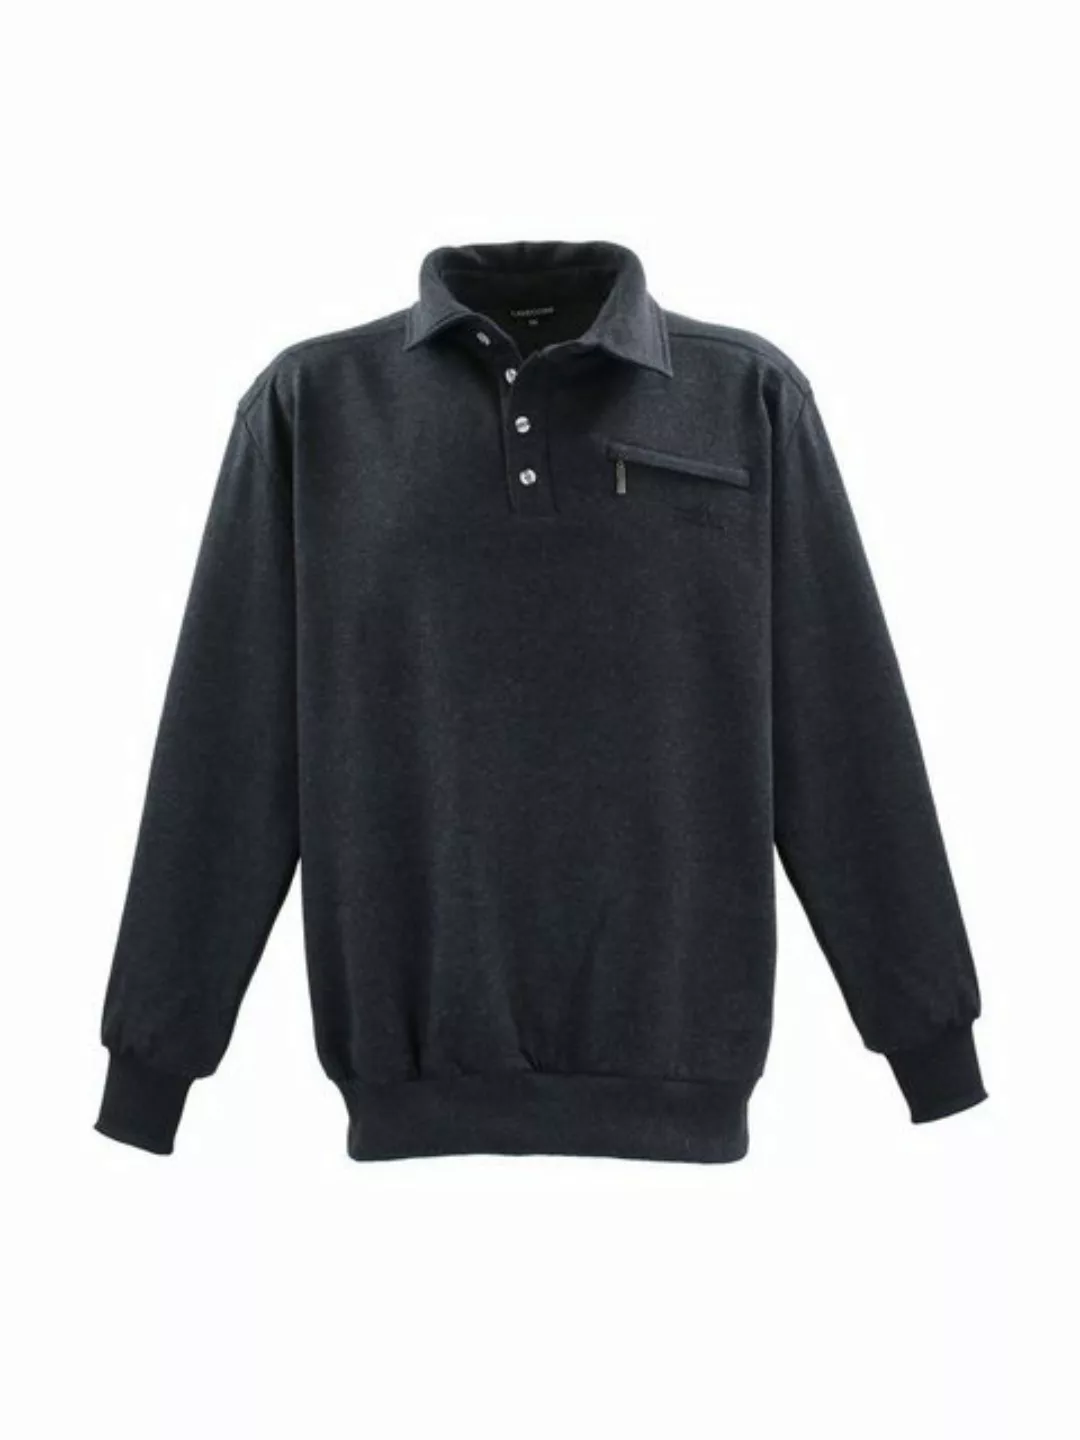 Lavecchia Sweatshirt Übergrößen Sweater LV-705S Sweat Pulli Pullover günstig online kaufen